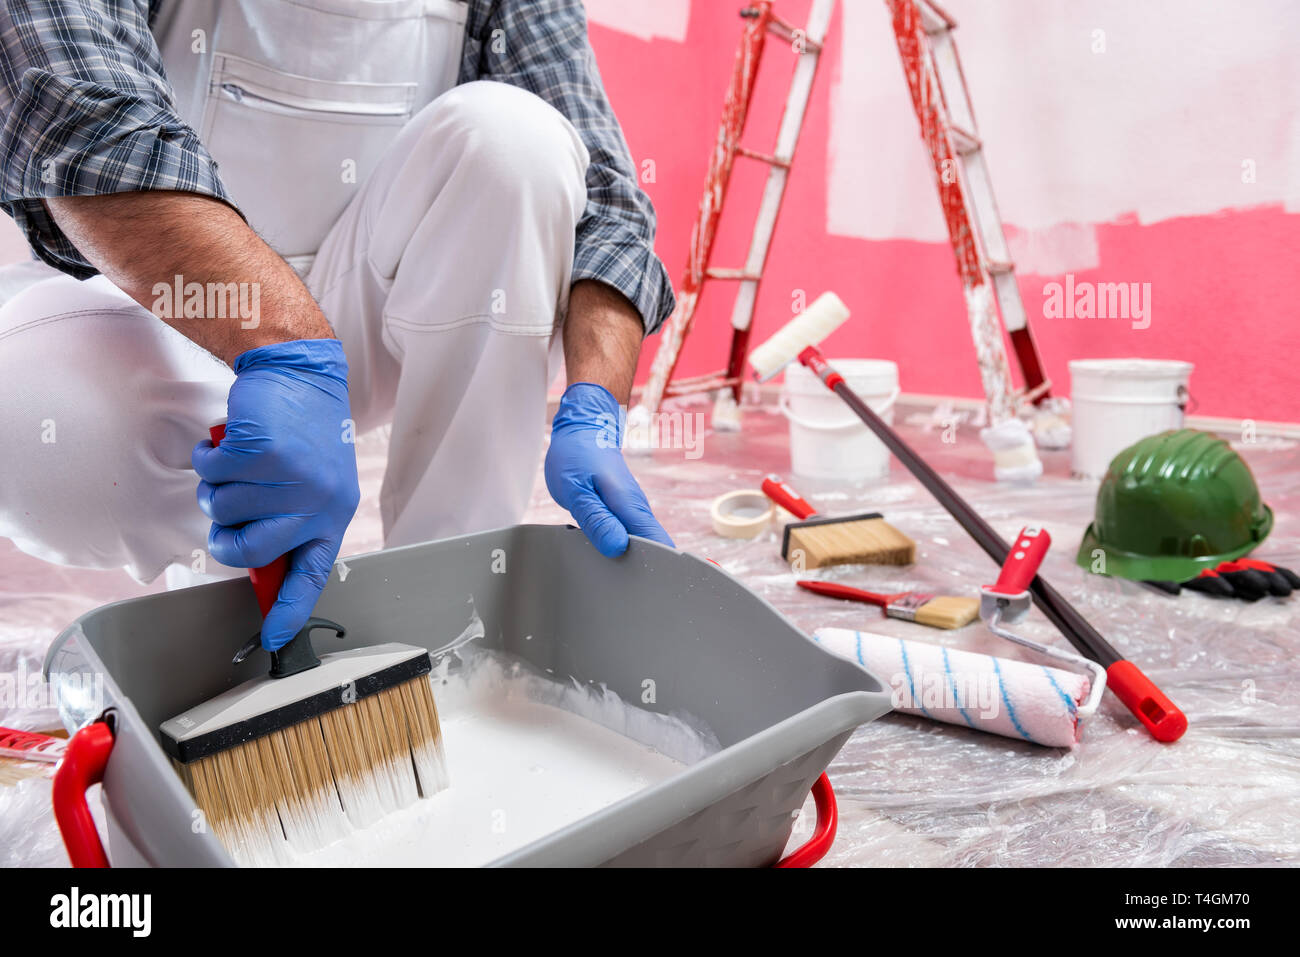 Kaukasische Haus Maler Arbeiter in weißen Overalls, bereiten die weiße Farbe die rosa Wand zu malen. Bauindustrie. Arbeitssicherheit. Stockfoto